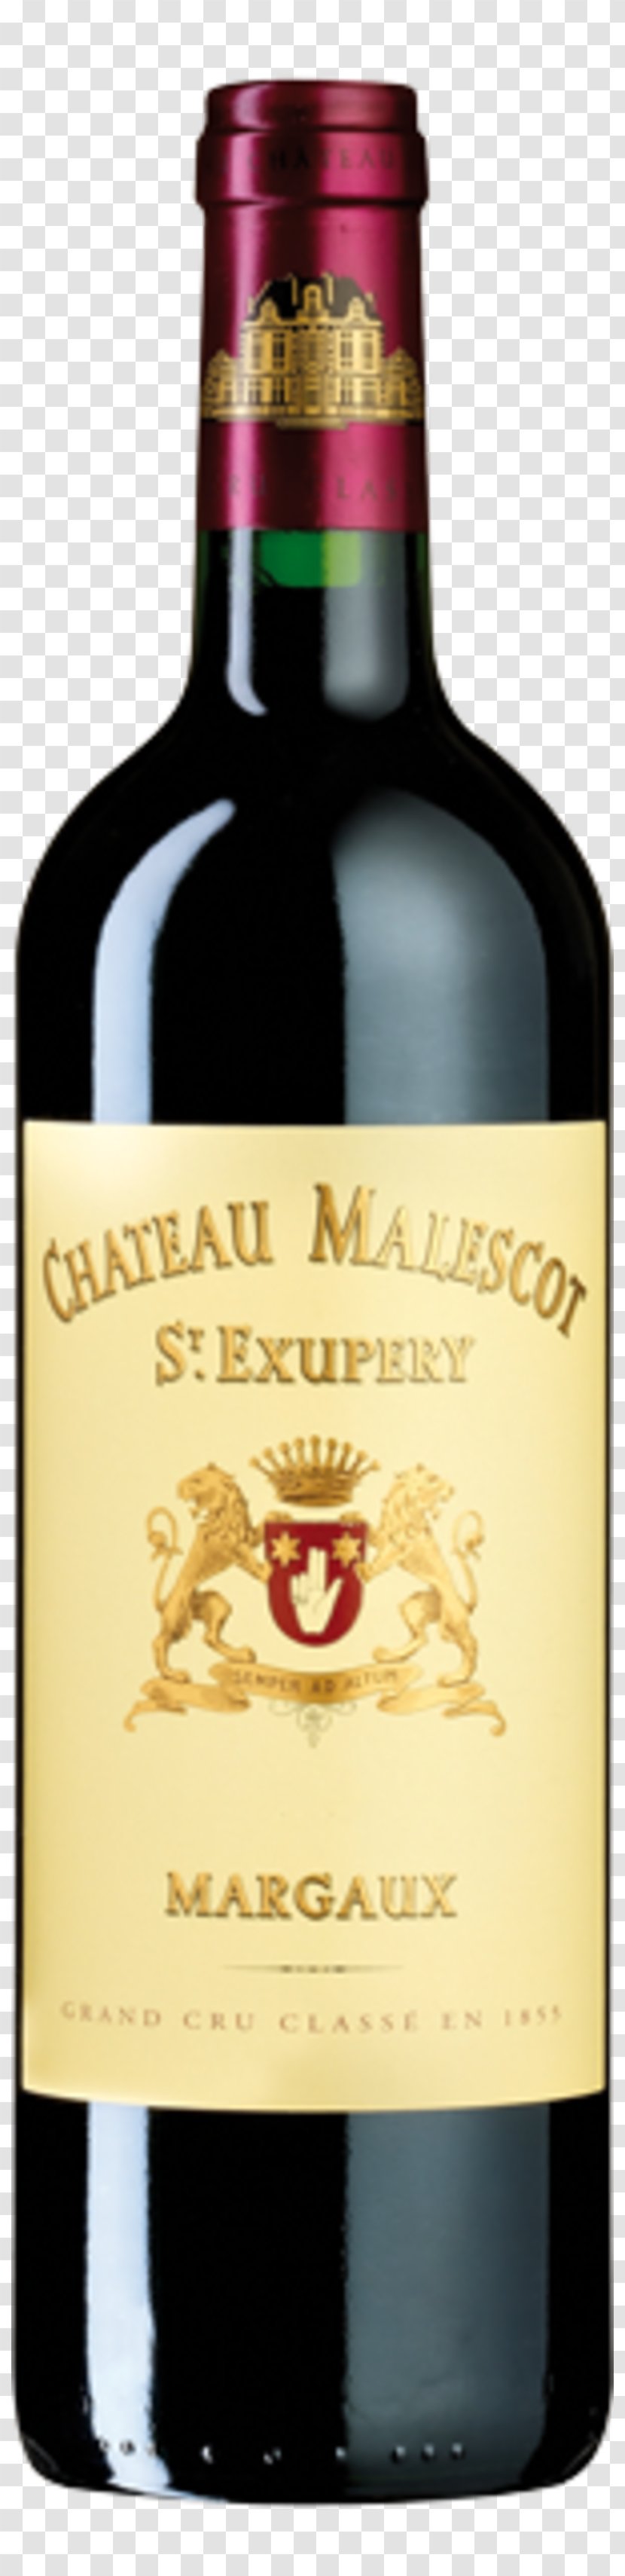 Château Malescot St. Exupéry Wine Liqueur Margaux AOC - Bottle Transparent PNG